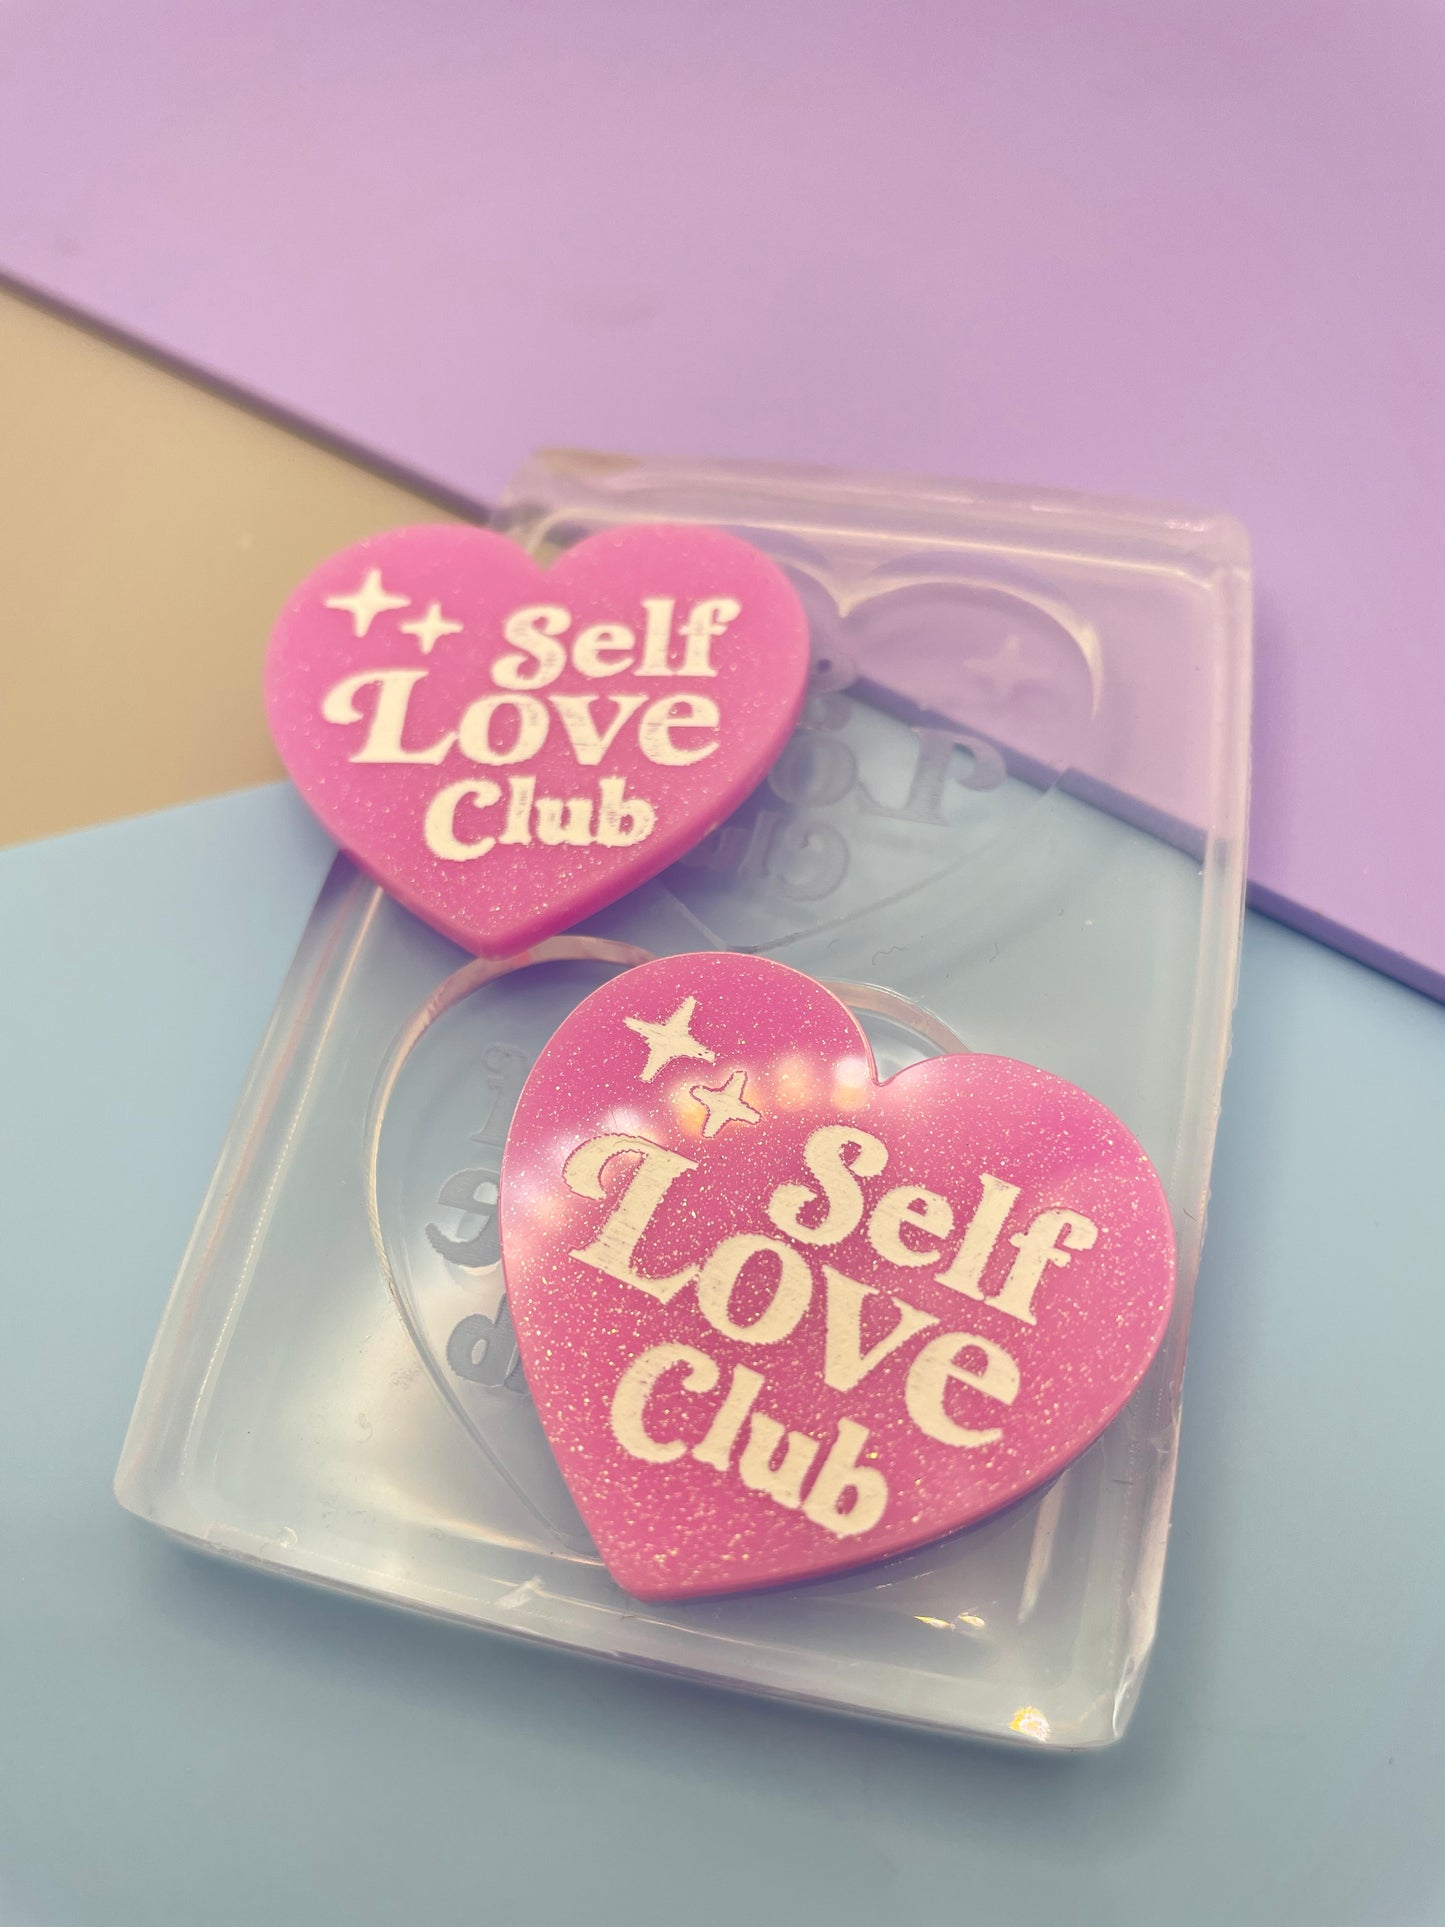 Self-love club heart Brooch Dangle Earring Mold